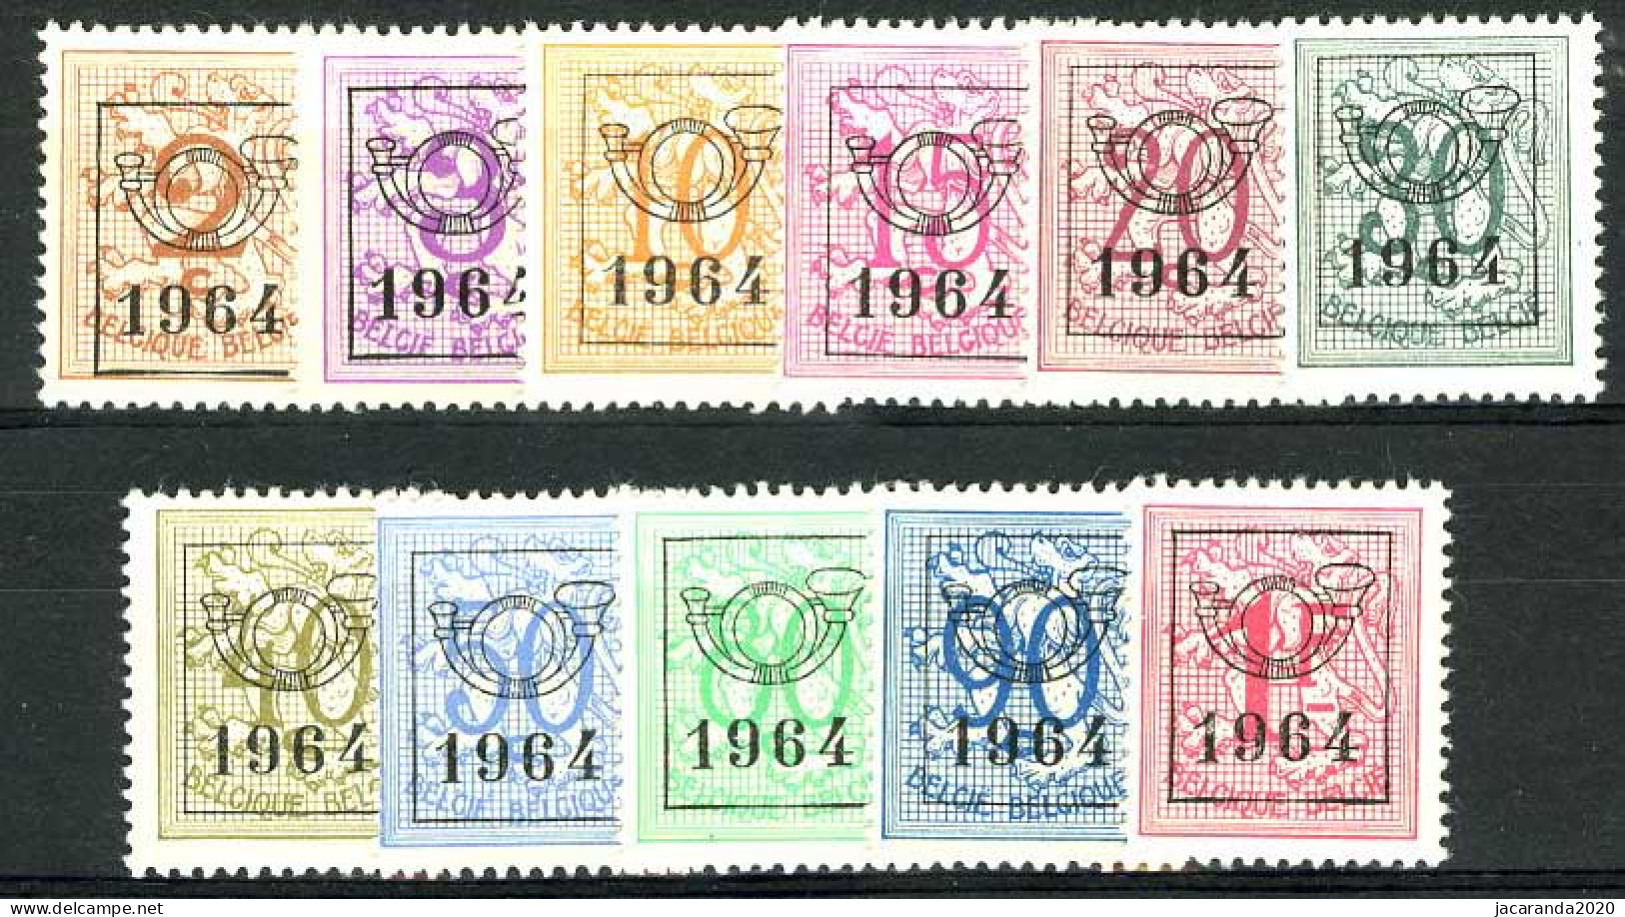 België PRE747/PRE757 ** - 1964 - Cijfer Op Heraldieke Leeuw - Chiffre Sur Lion Héraldique - Preo Reeks 57 - 11w. - Typografisch 1951-80 (Cijfer Op Leeuw)